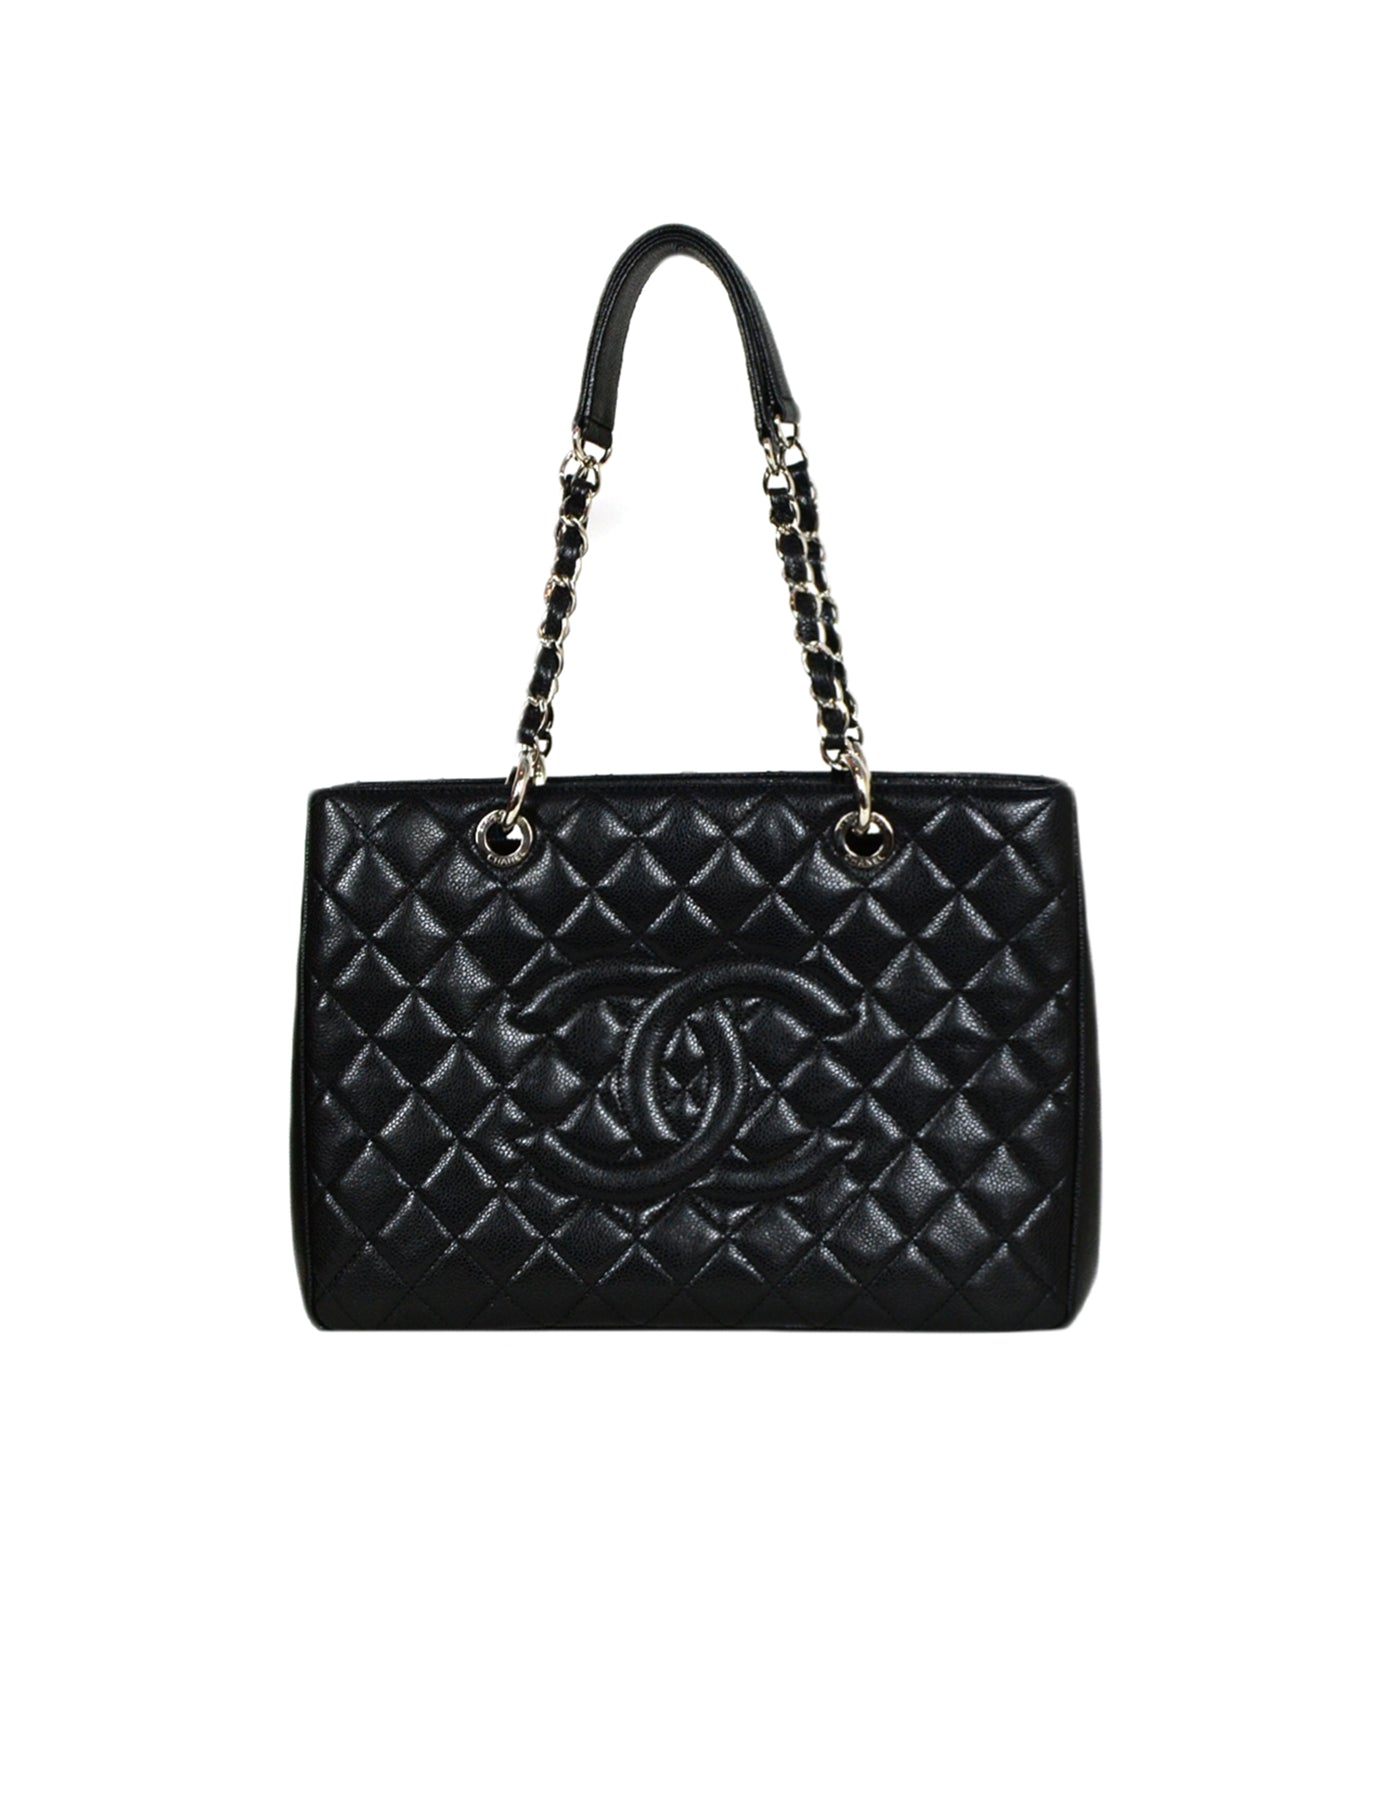 Chanel Black/Silver Caviar Leather GST Grand Shopper Tote Bag